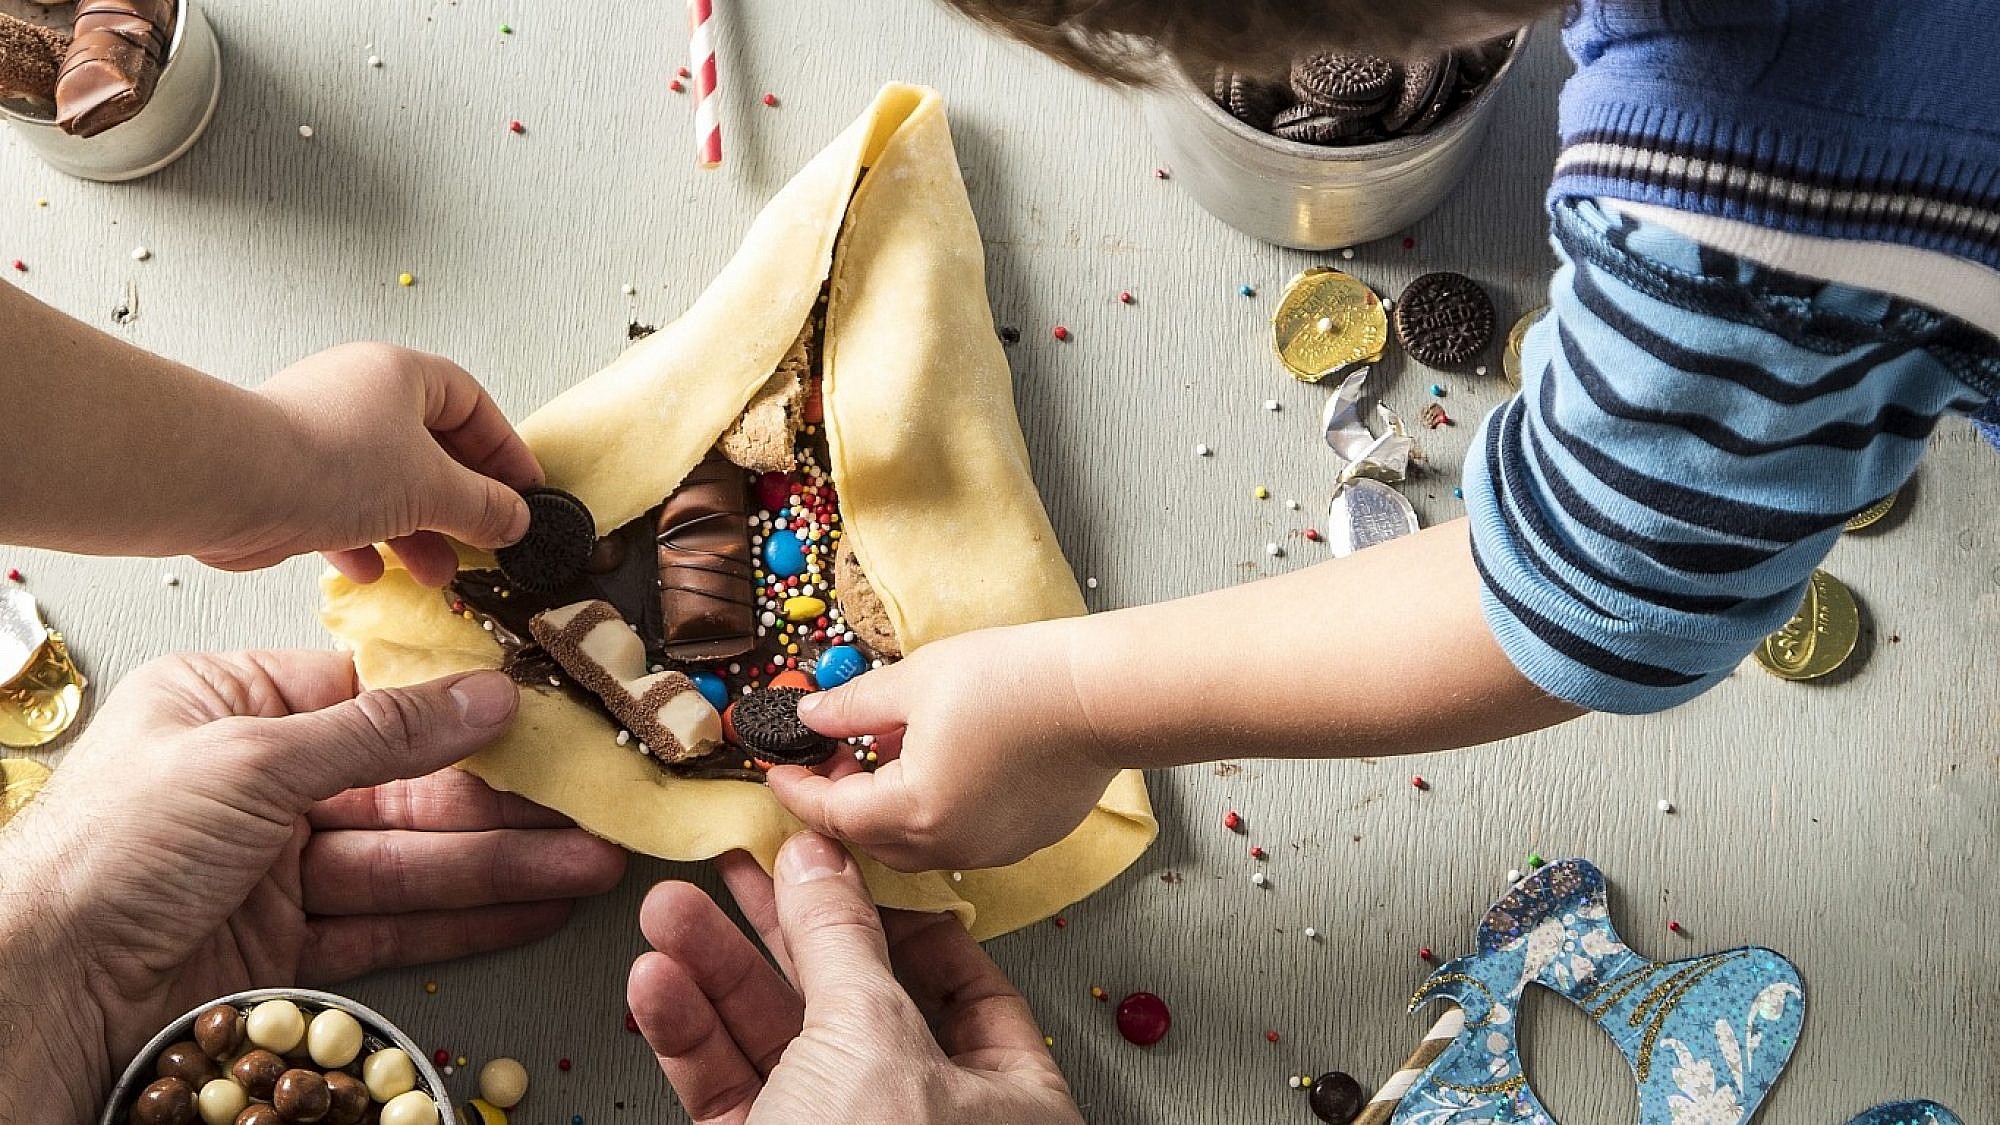 אוזן המן ענקית עם ממתקים לילדים של תום פרנץ. צילום וסטיילינג: אפיק גבאי